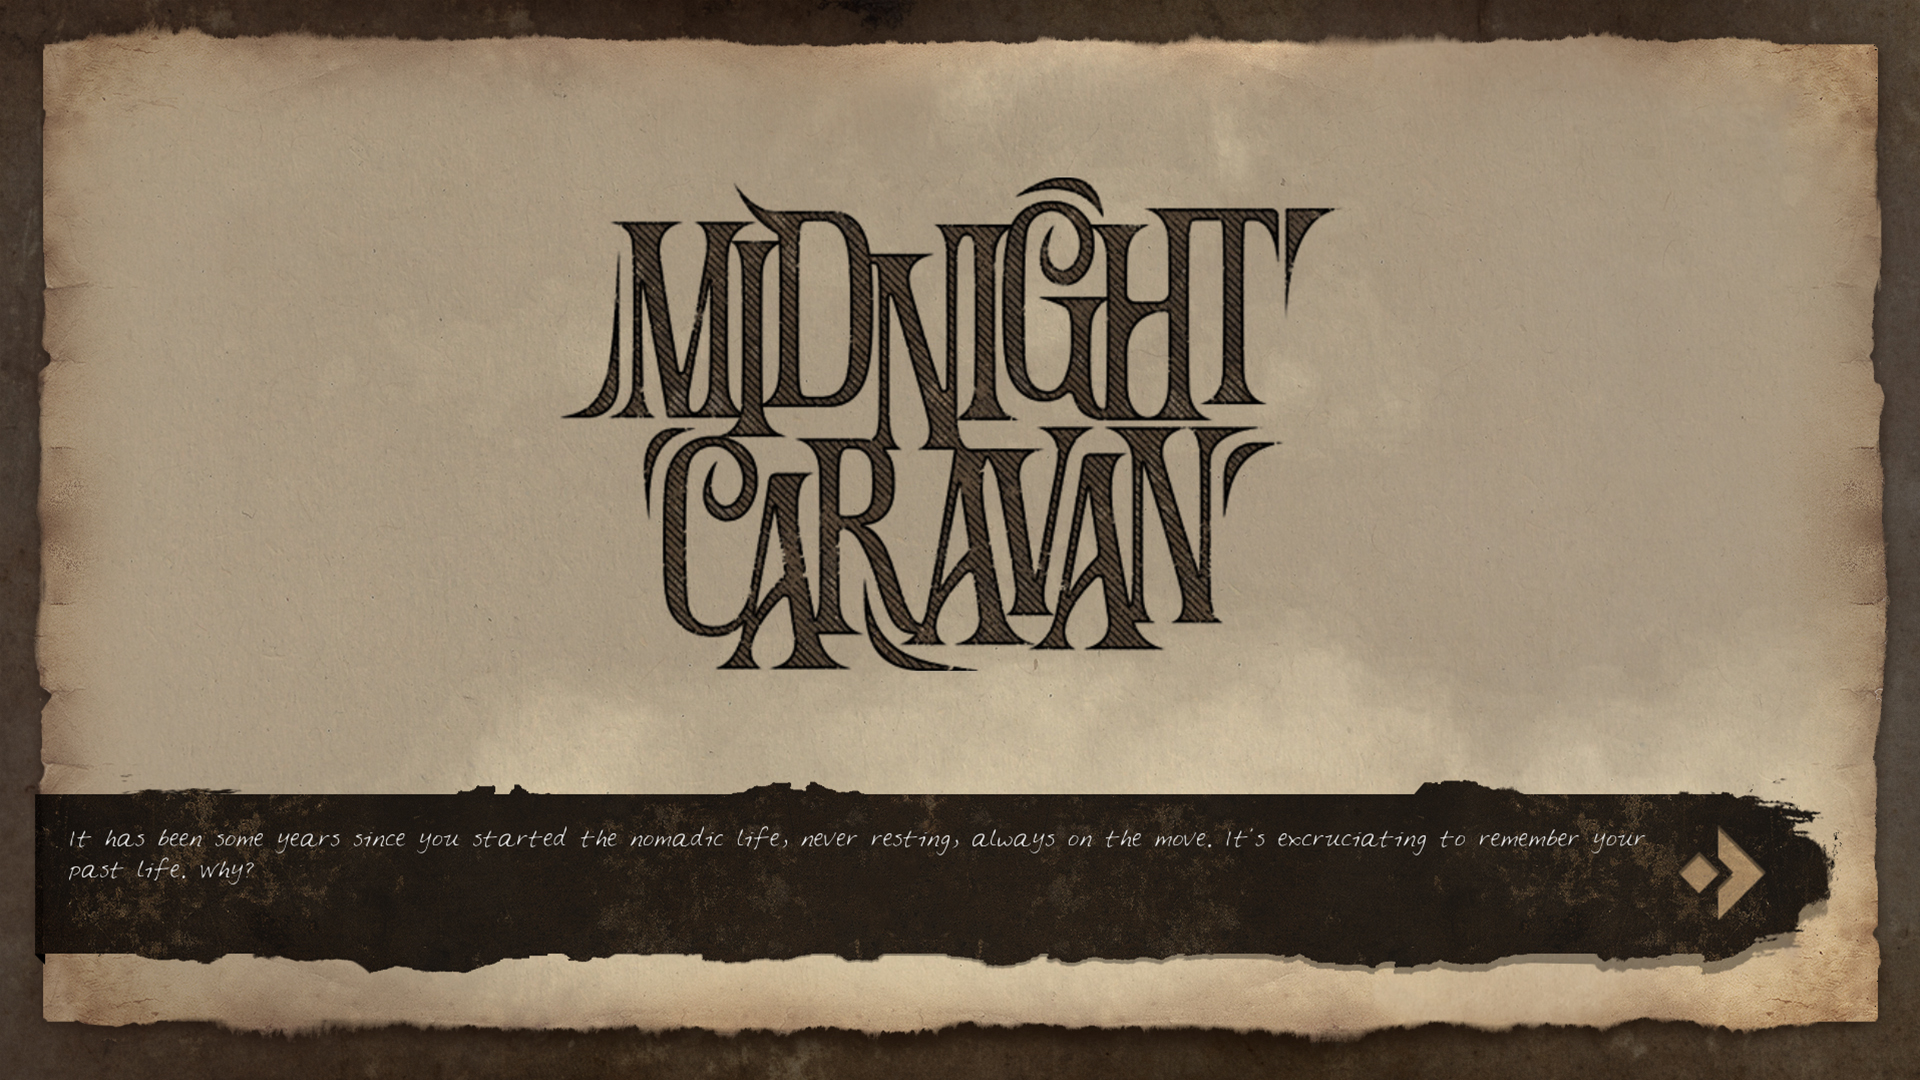 Midnight Caravan Steam CD Key 1.12 USD